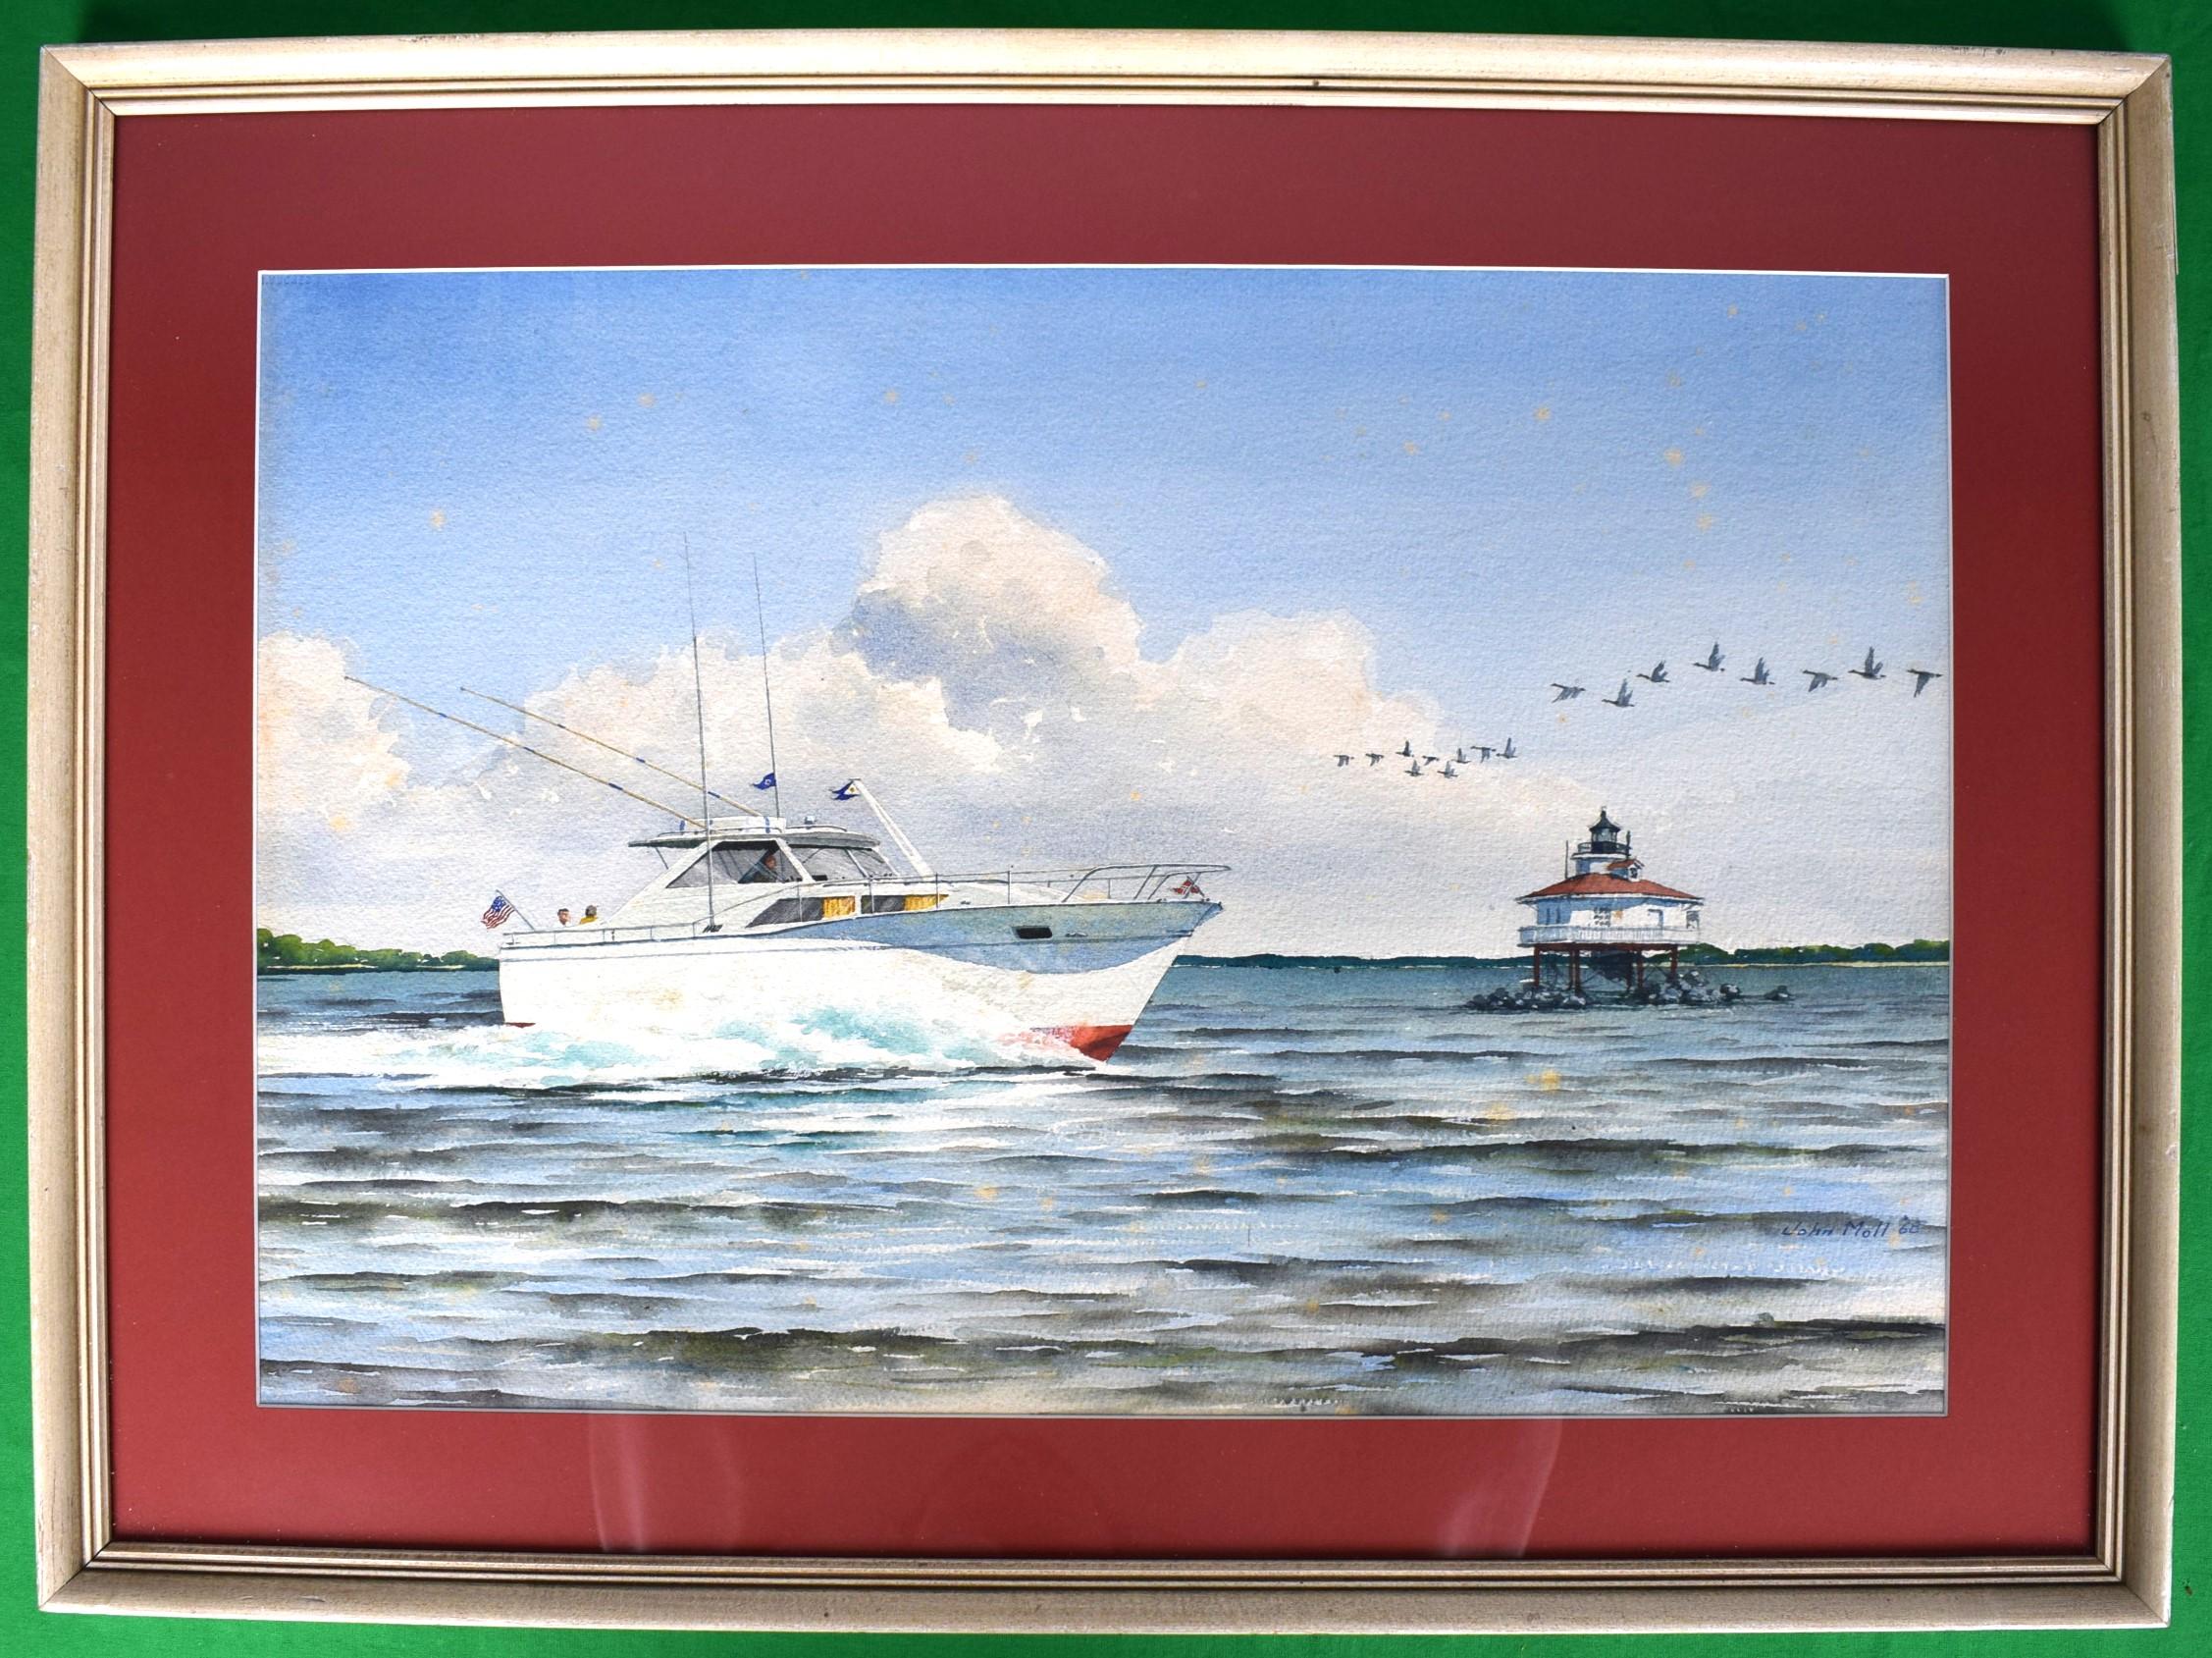 Motorboat Off Eastern Shore Maryland w/ Geese In Flight 1968 Watercolor by John  - Art by John Moll (1908-1991)